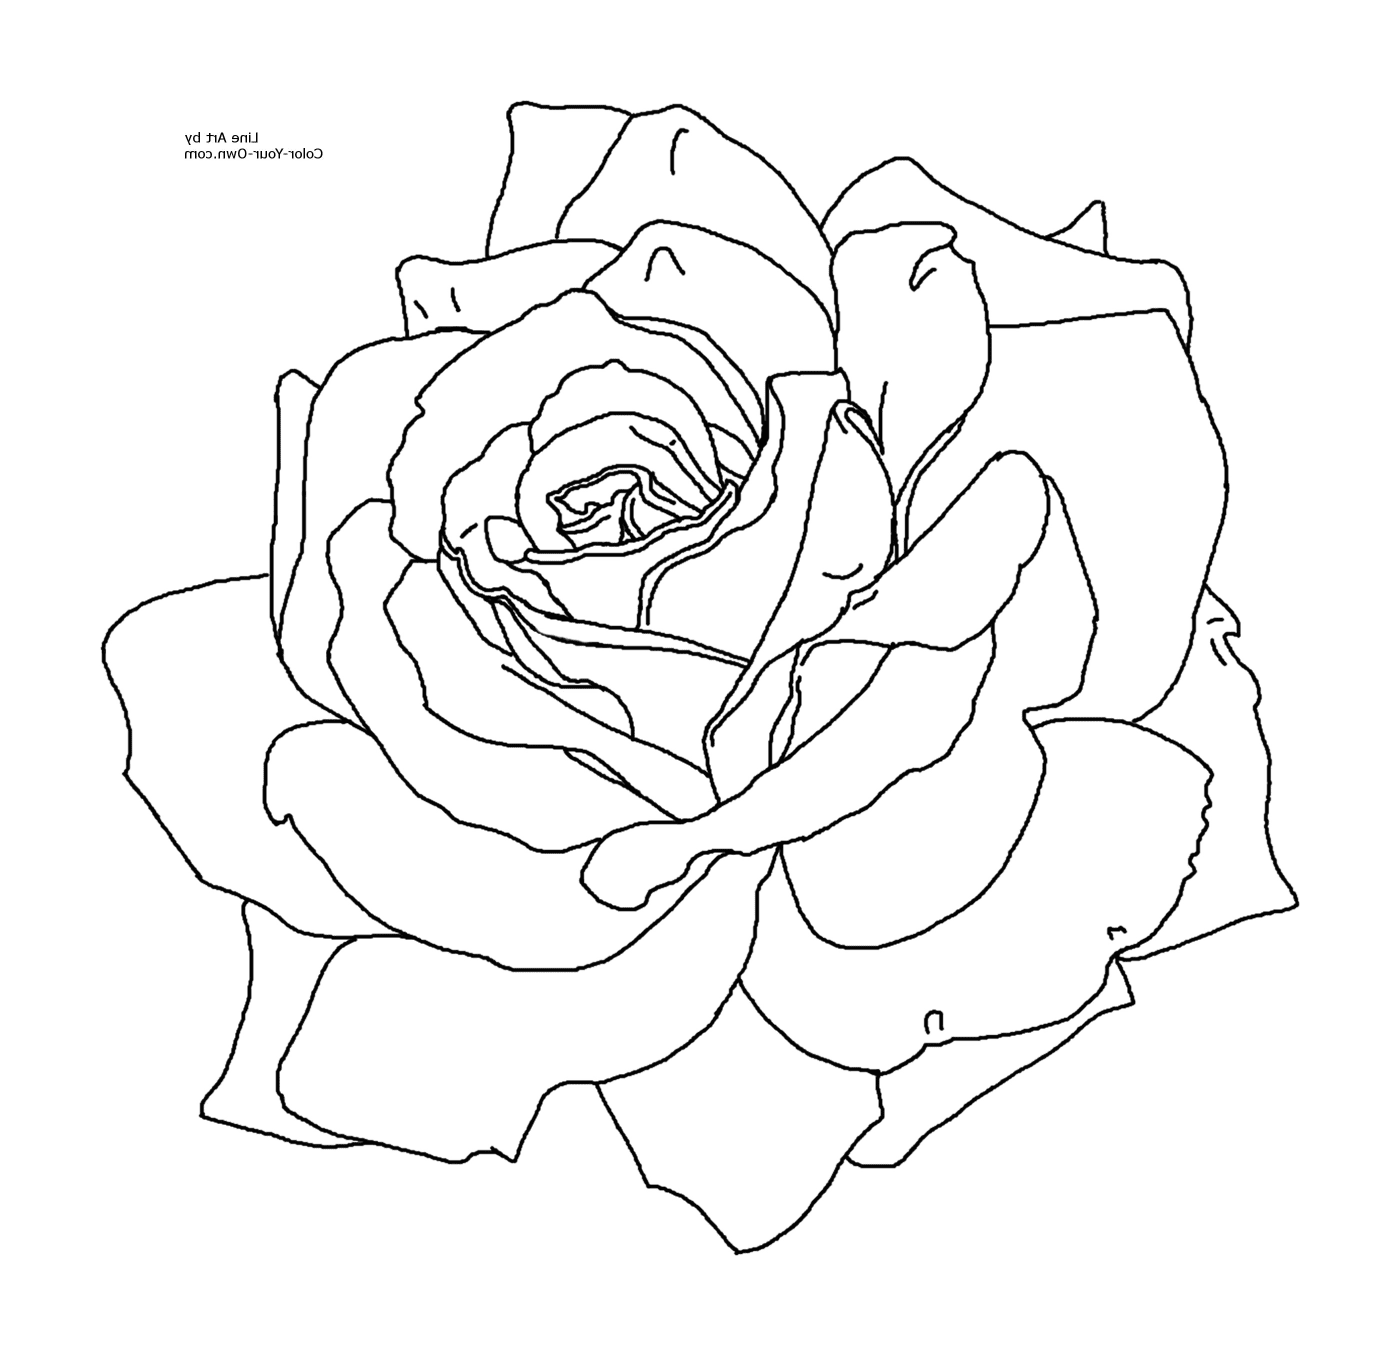  Rosa simples e elegante 